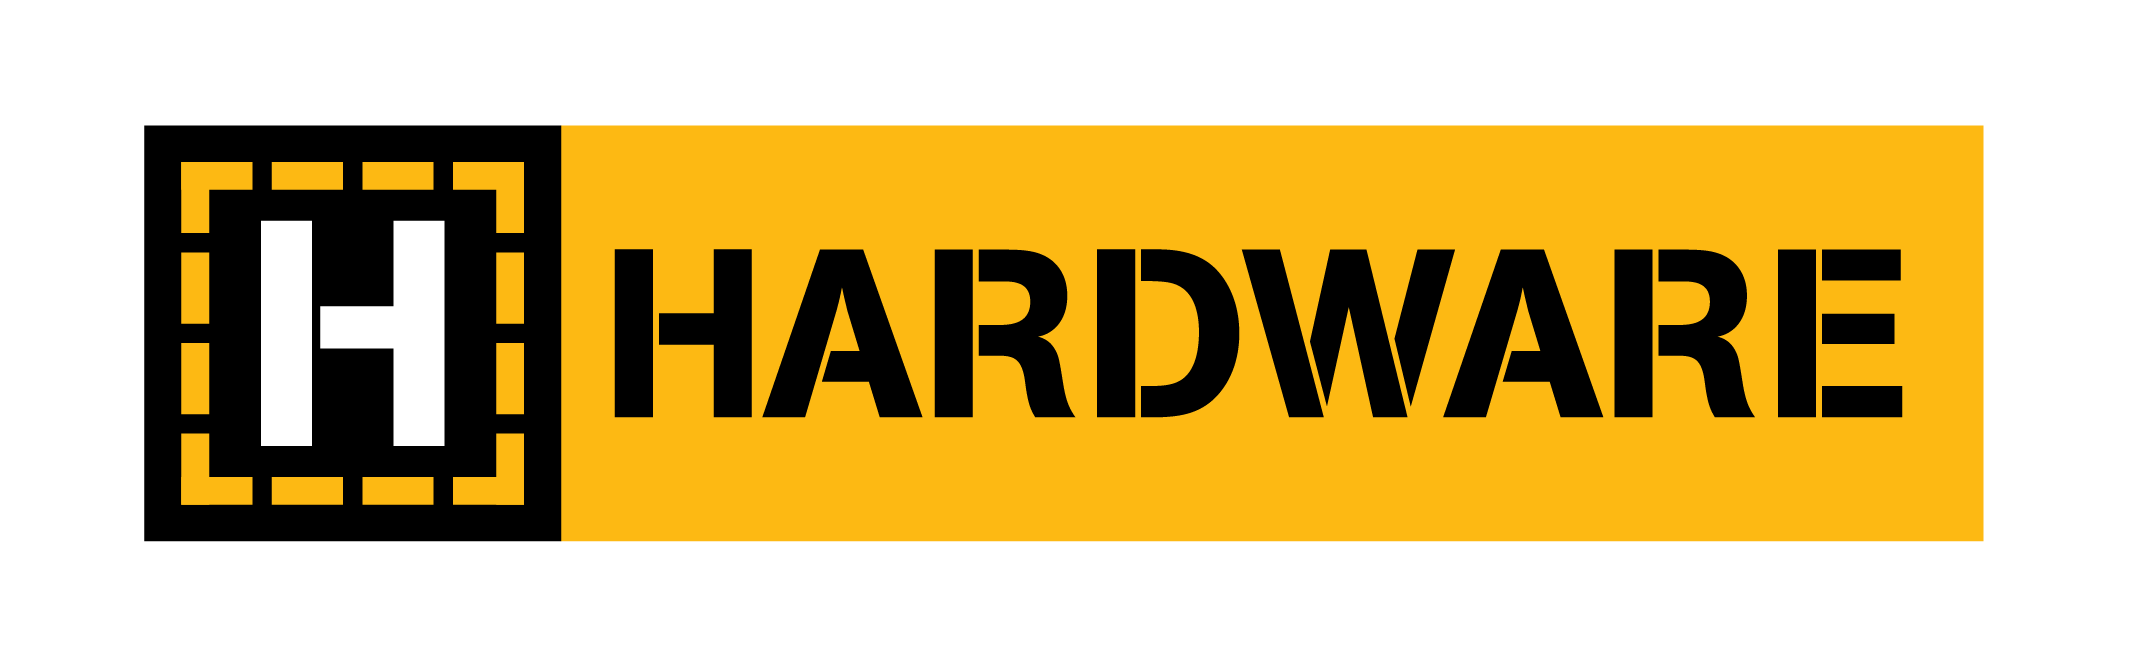 hardware logo stockist banner 1